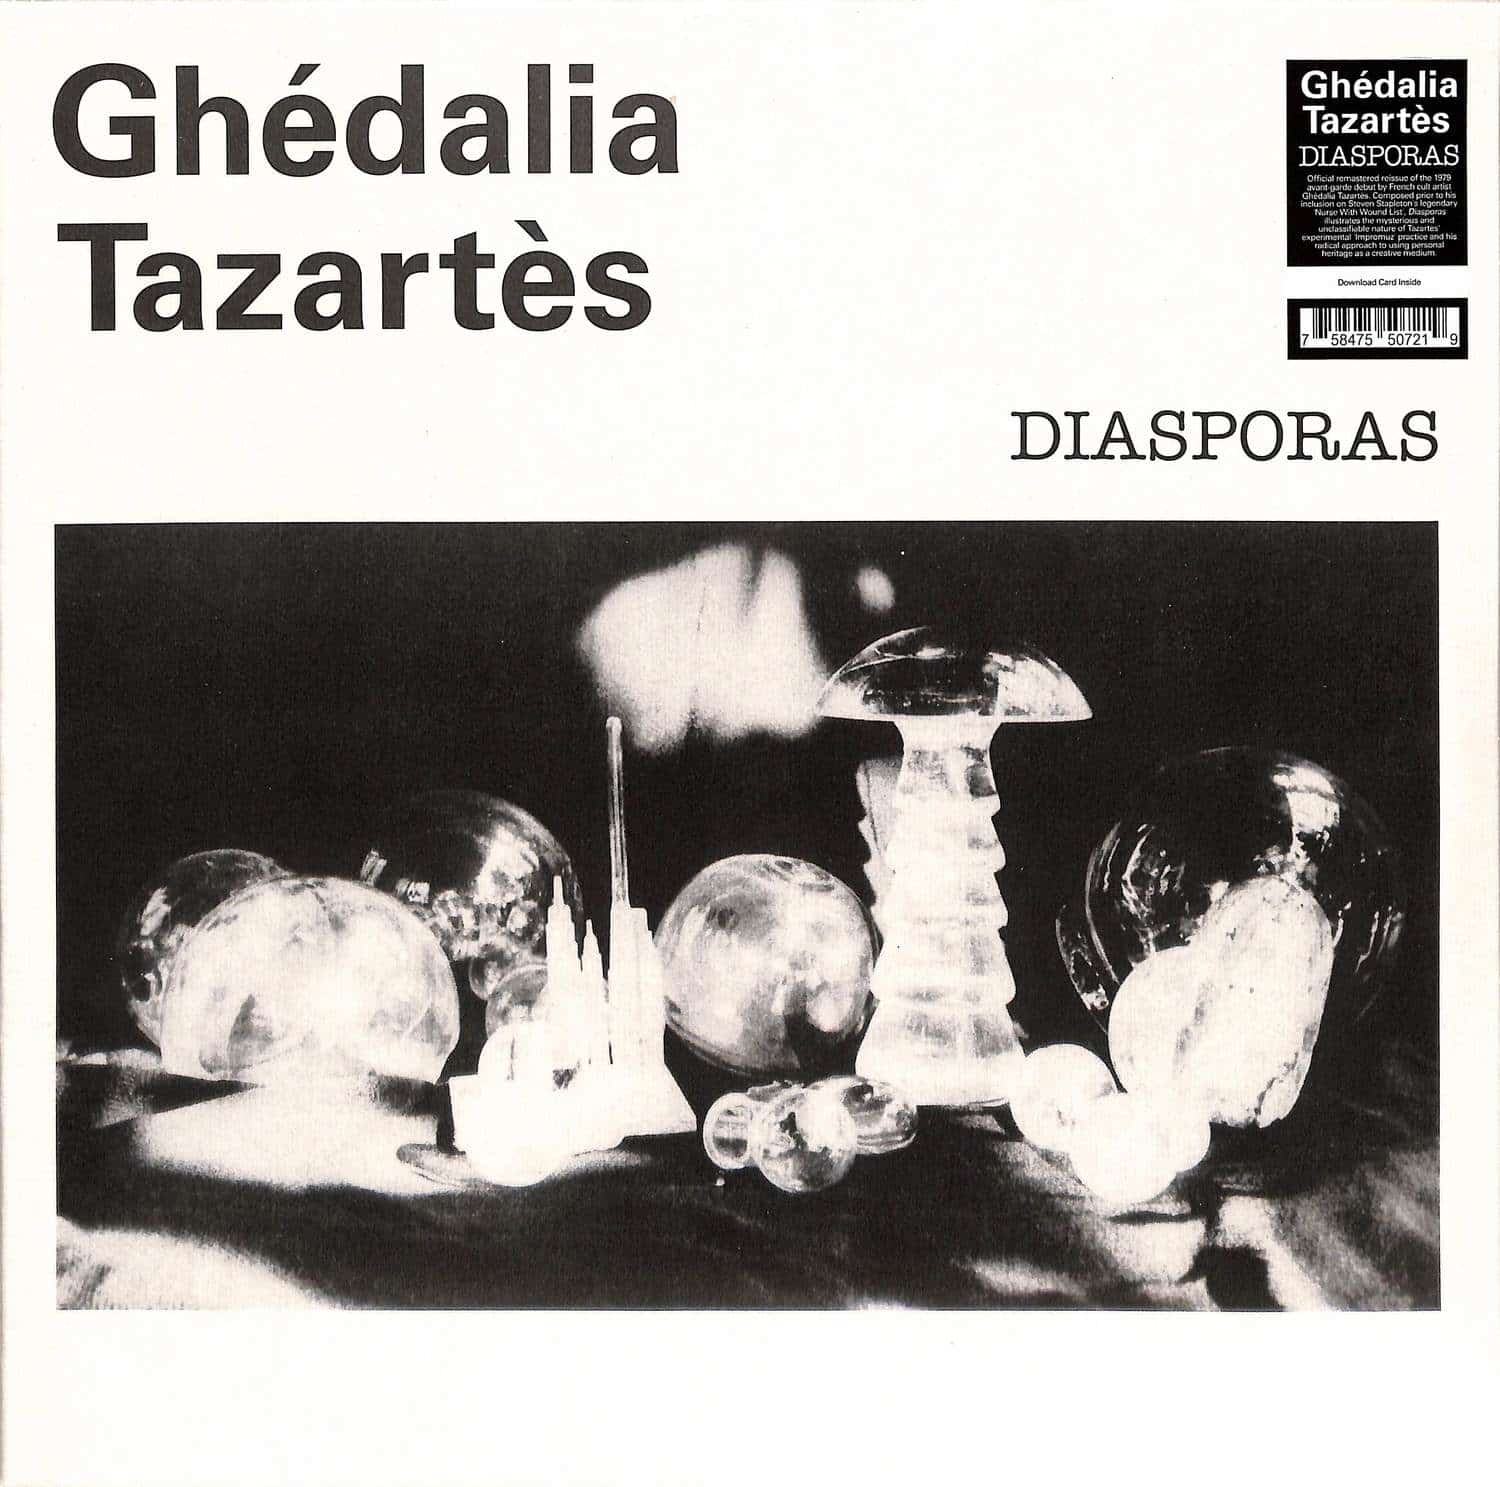 Ghedalia Tazartes - DIASPORAS 